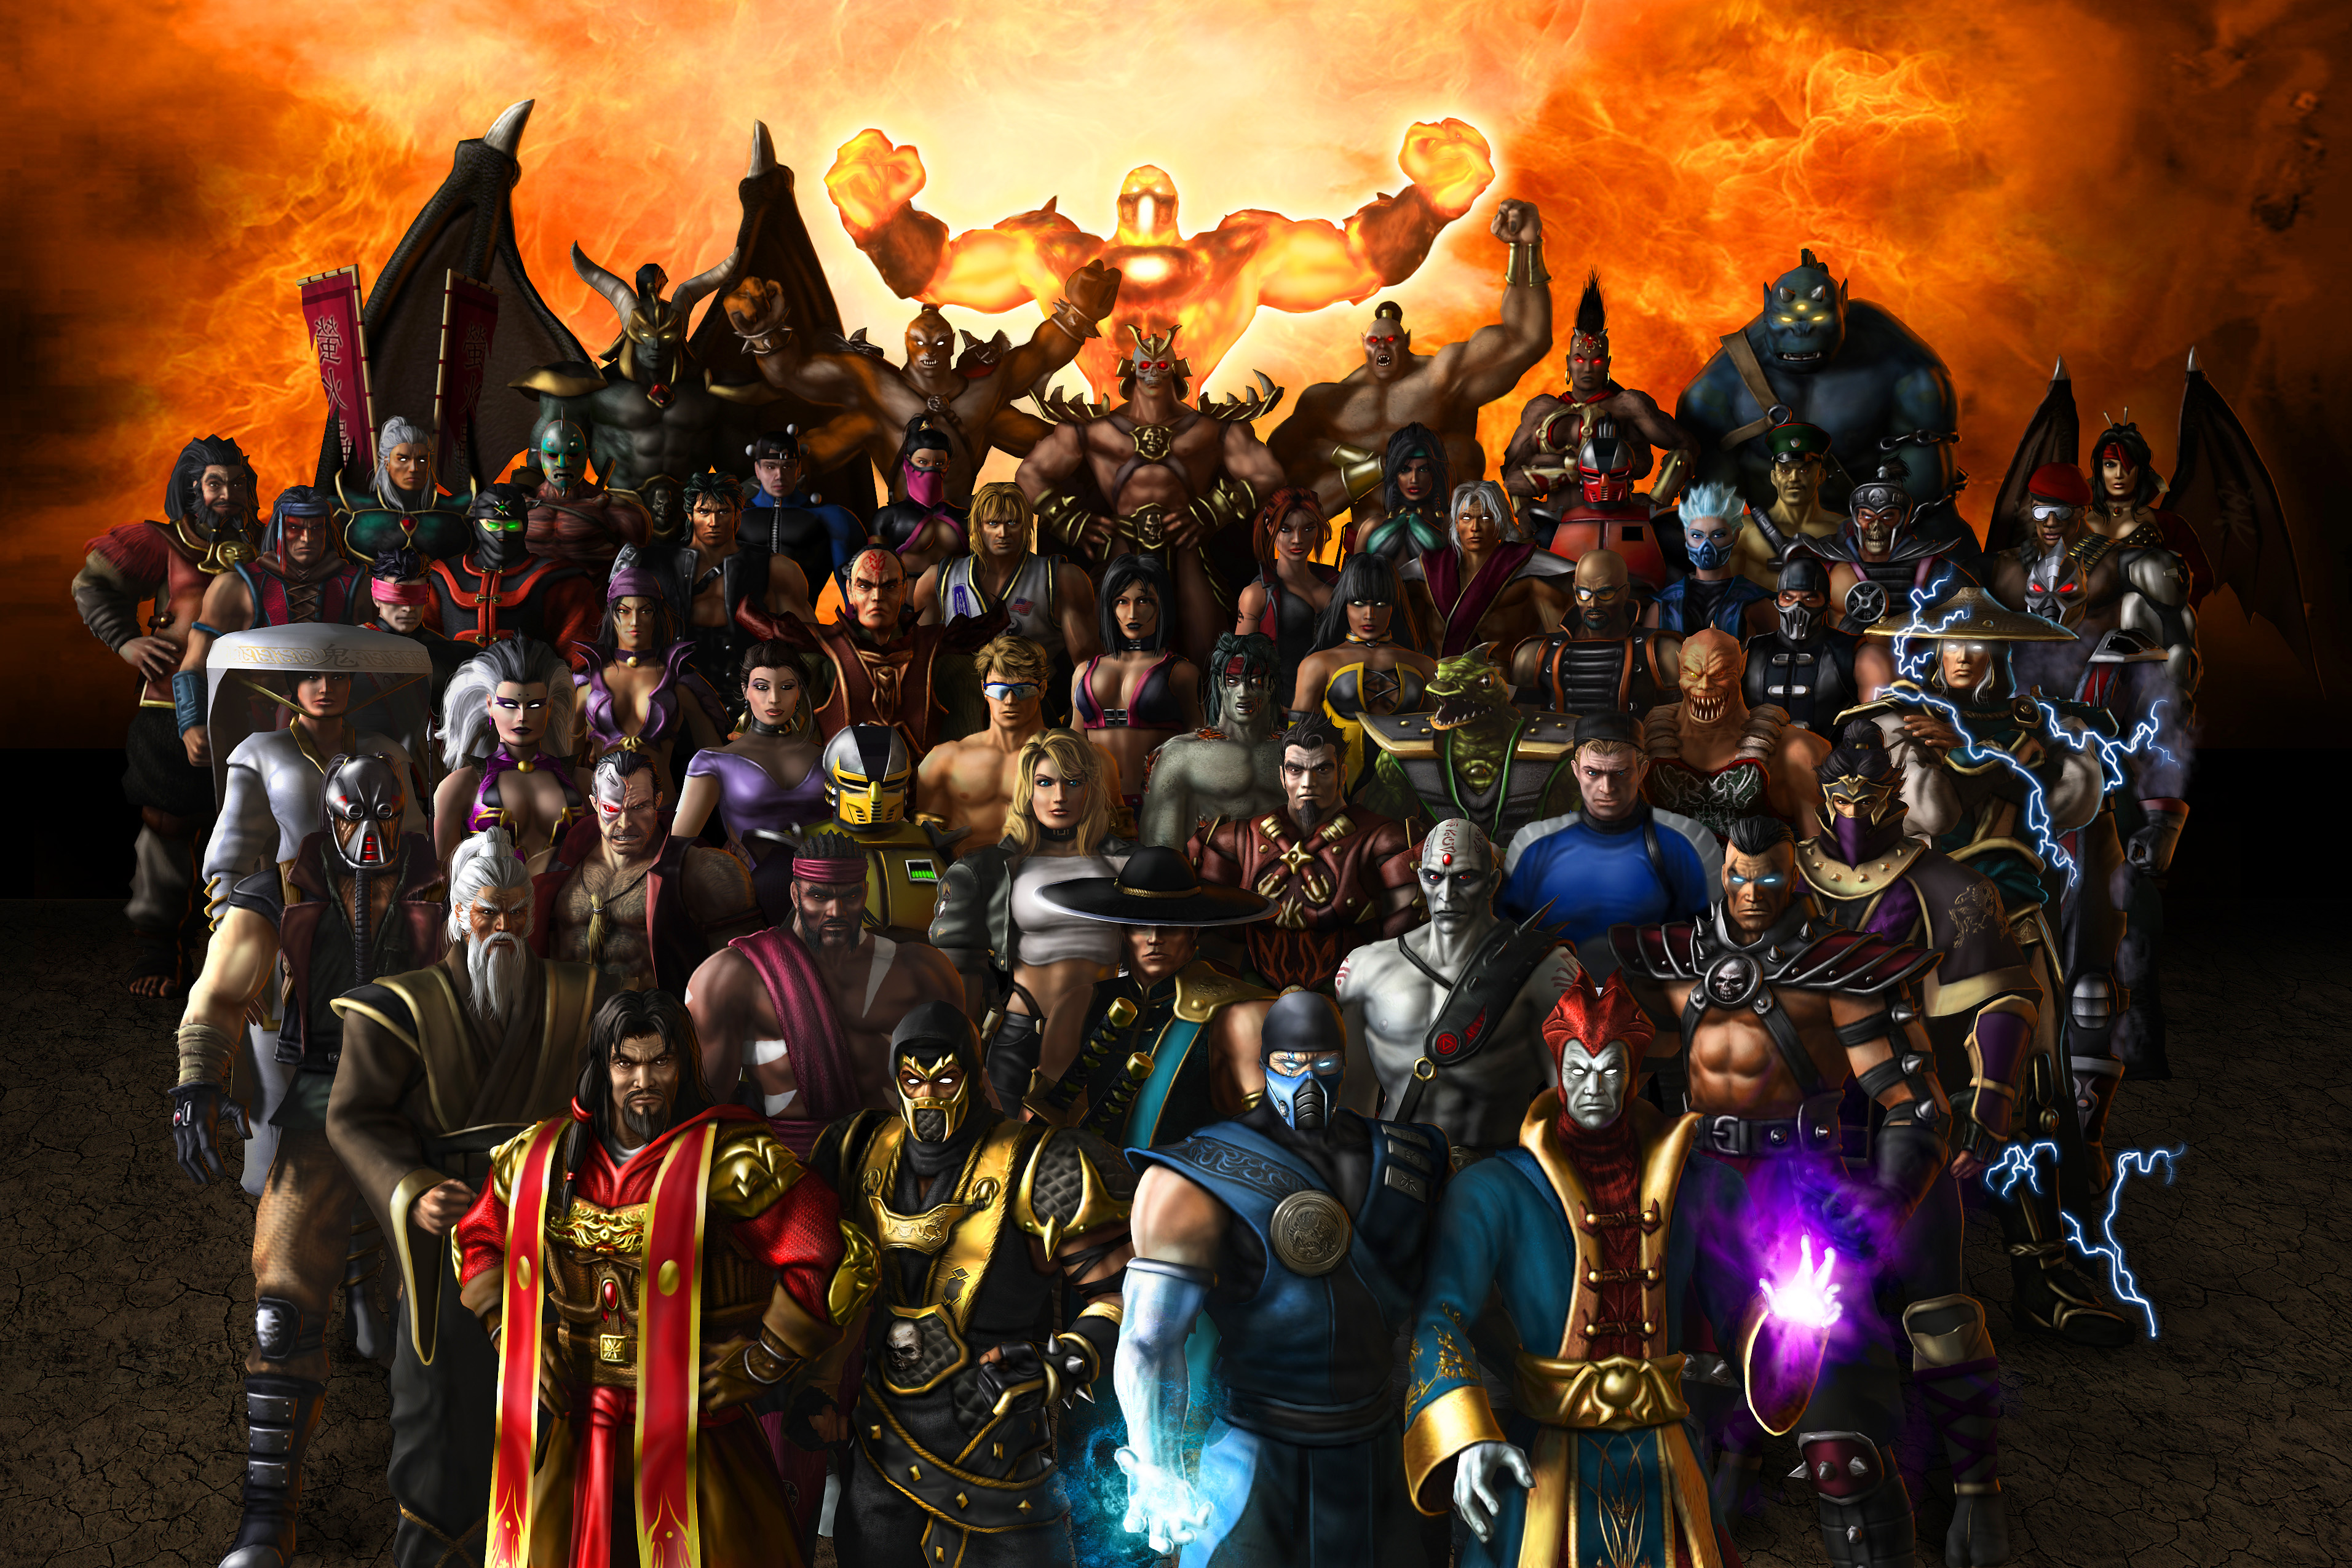 видеоигры, Mortal Kombat, персонажи, Raiden, конические шляпы, Mortal Kombat : Armageddon - обои на рабочий стол